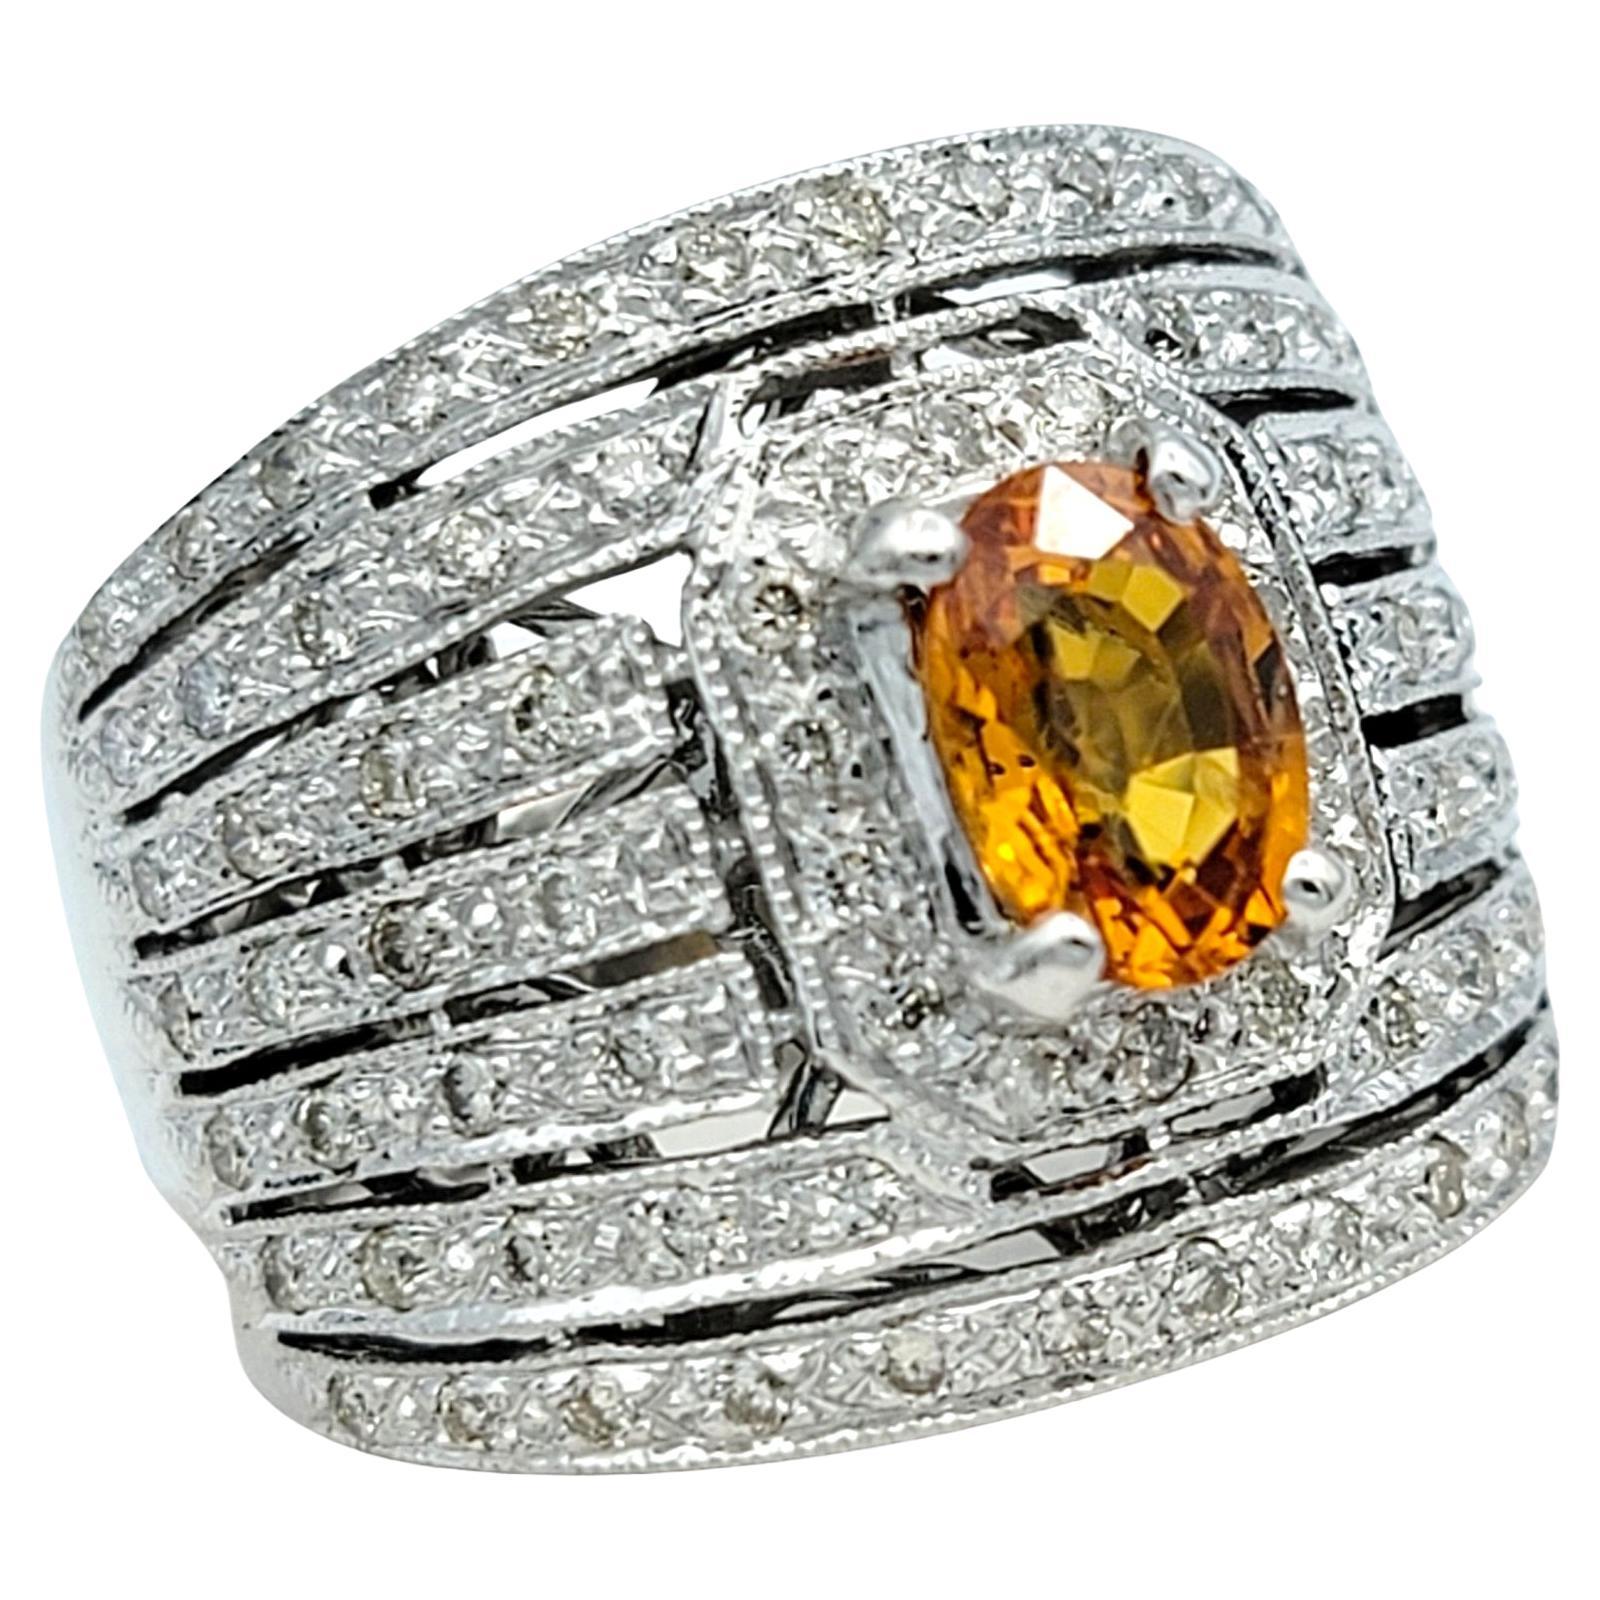 Ringgröße: 5

Dieser Ring aus 14 Karat Weißgold strahlt mit seinem ovalen orangefarbenen Saphir in der Mitte und den 7 umlaufenden Reihen funkelnder Diamanten zeitlose Eleganz aus. Der warme Farbton des Saphirs kontrastiert wunderschön mit dem